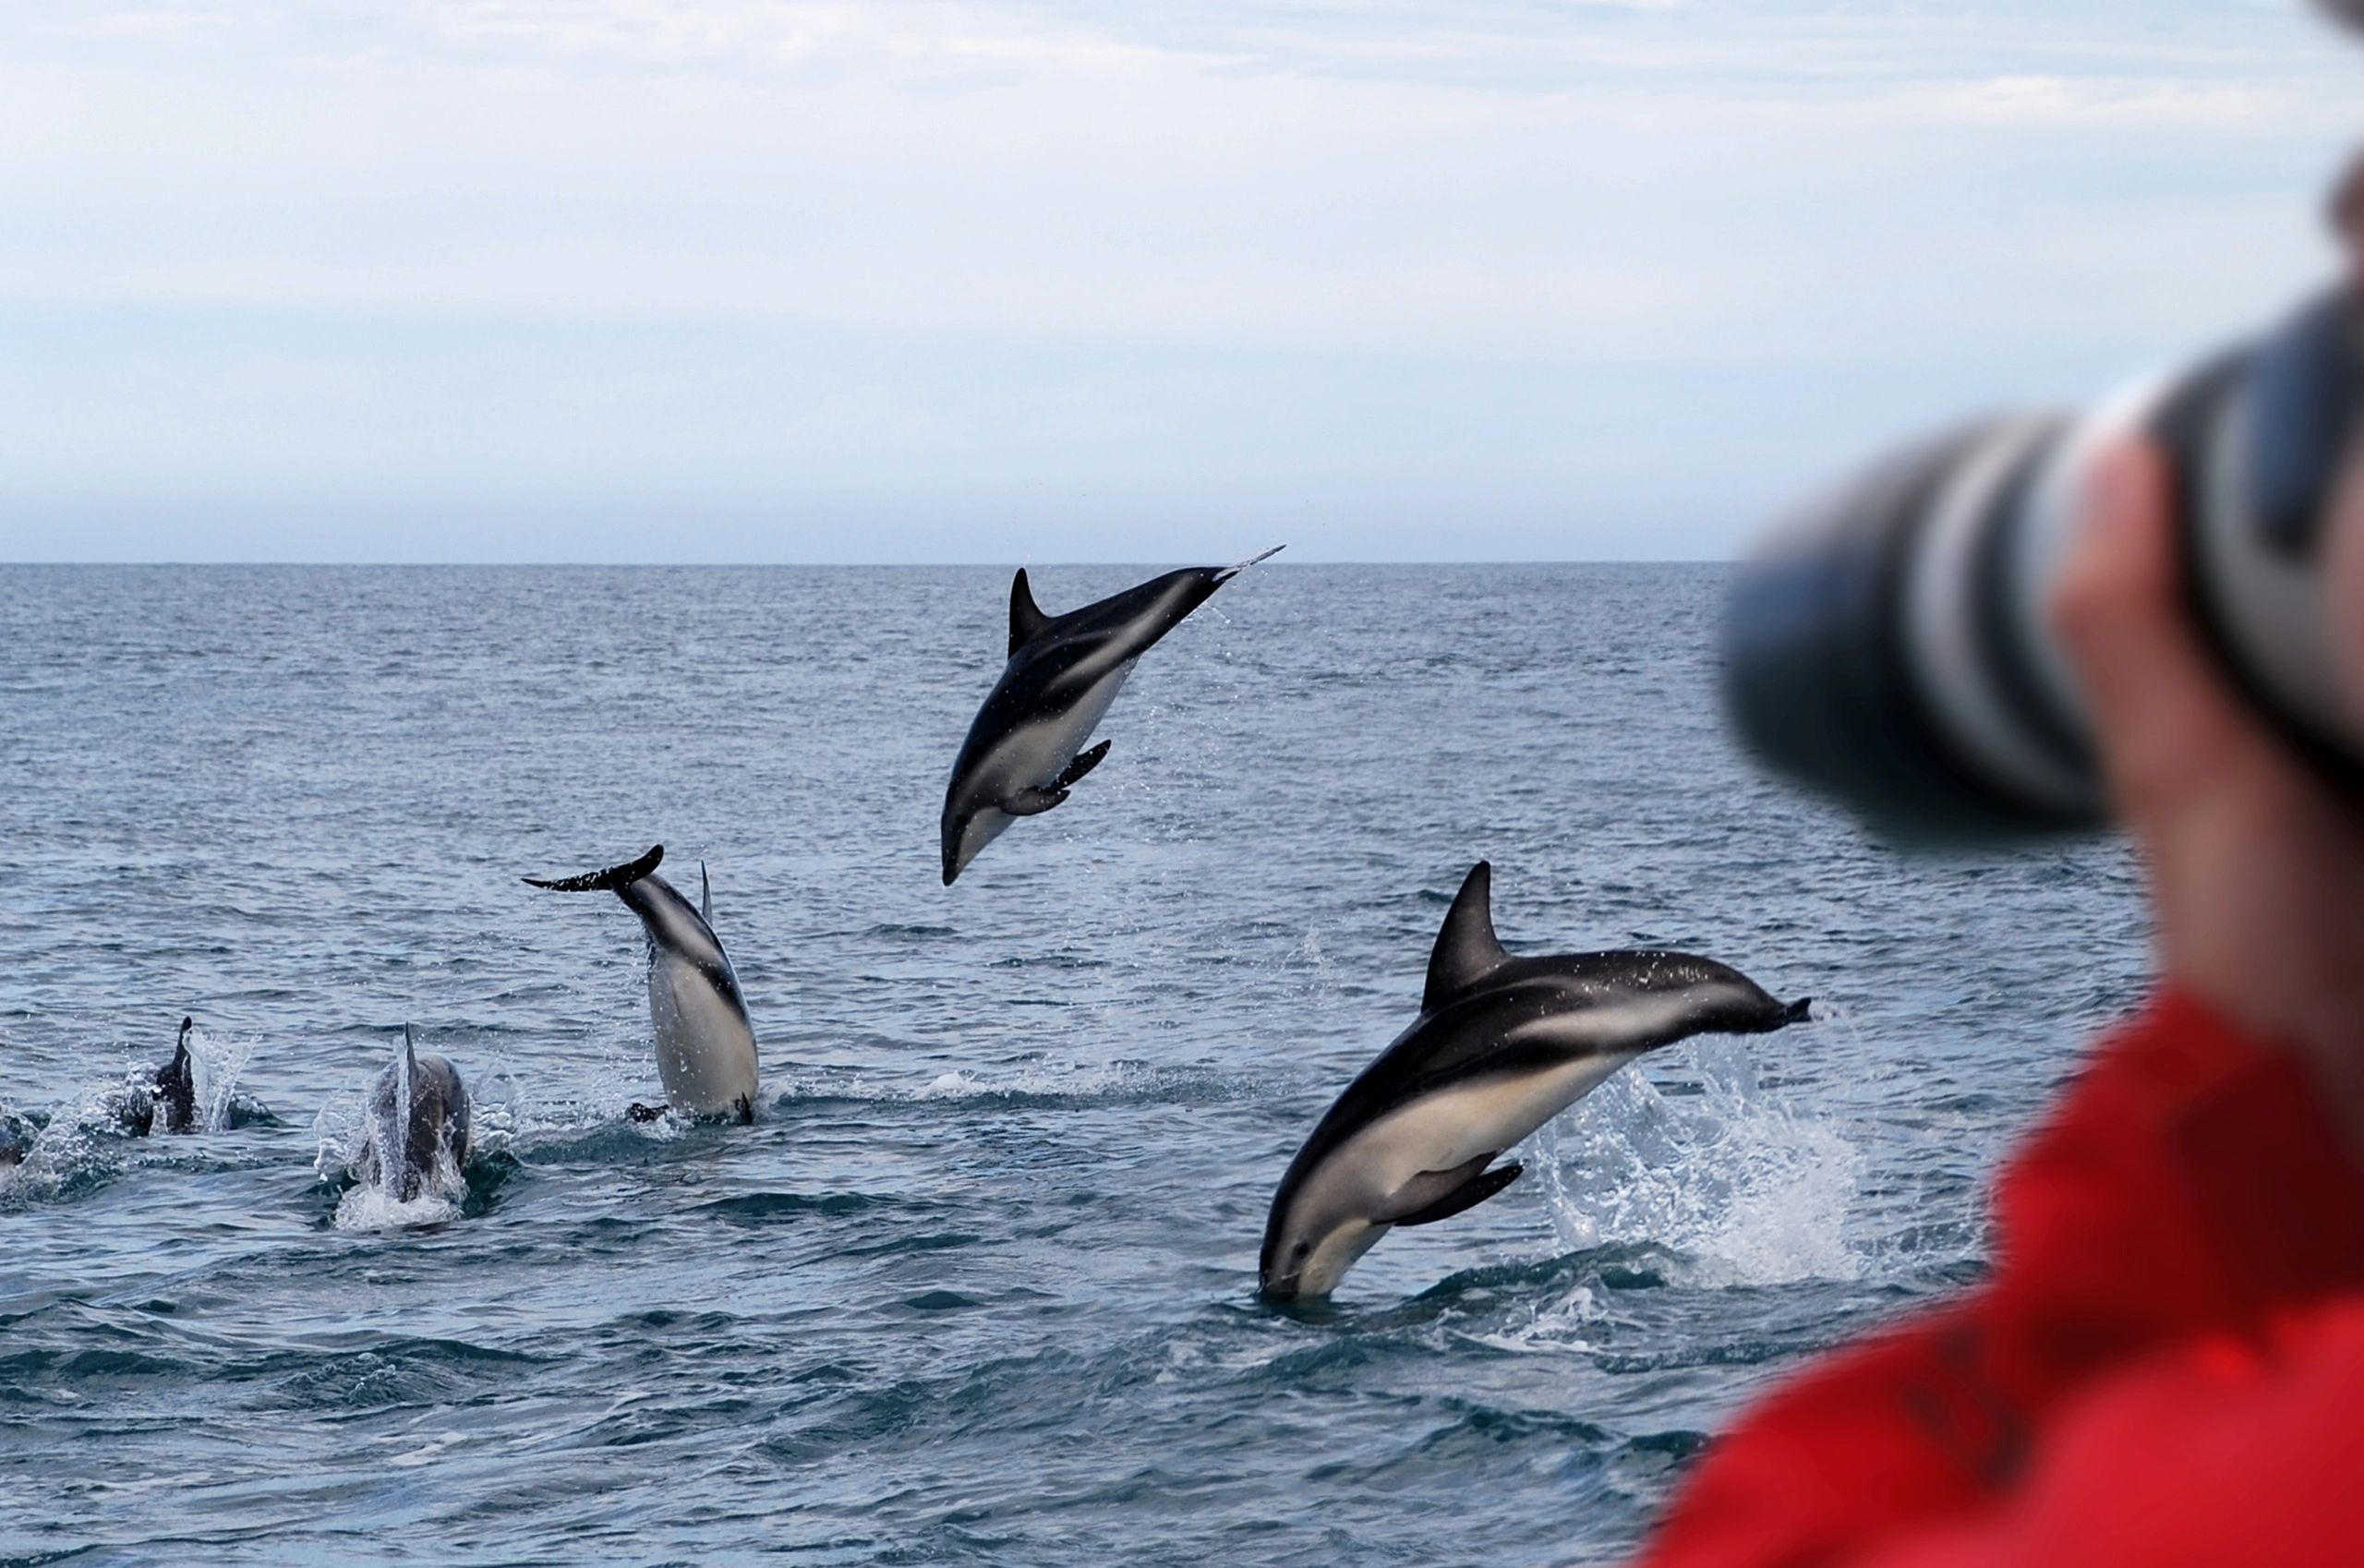 ocean safari guide taking photos of dolphin